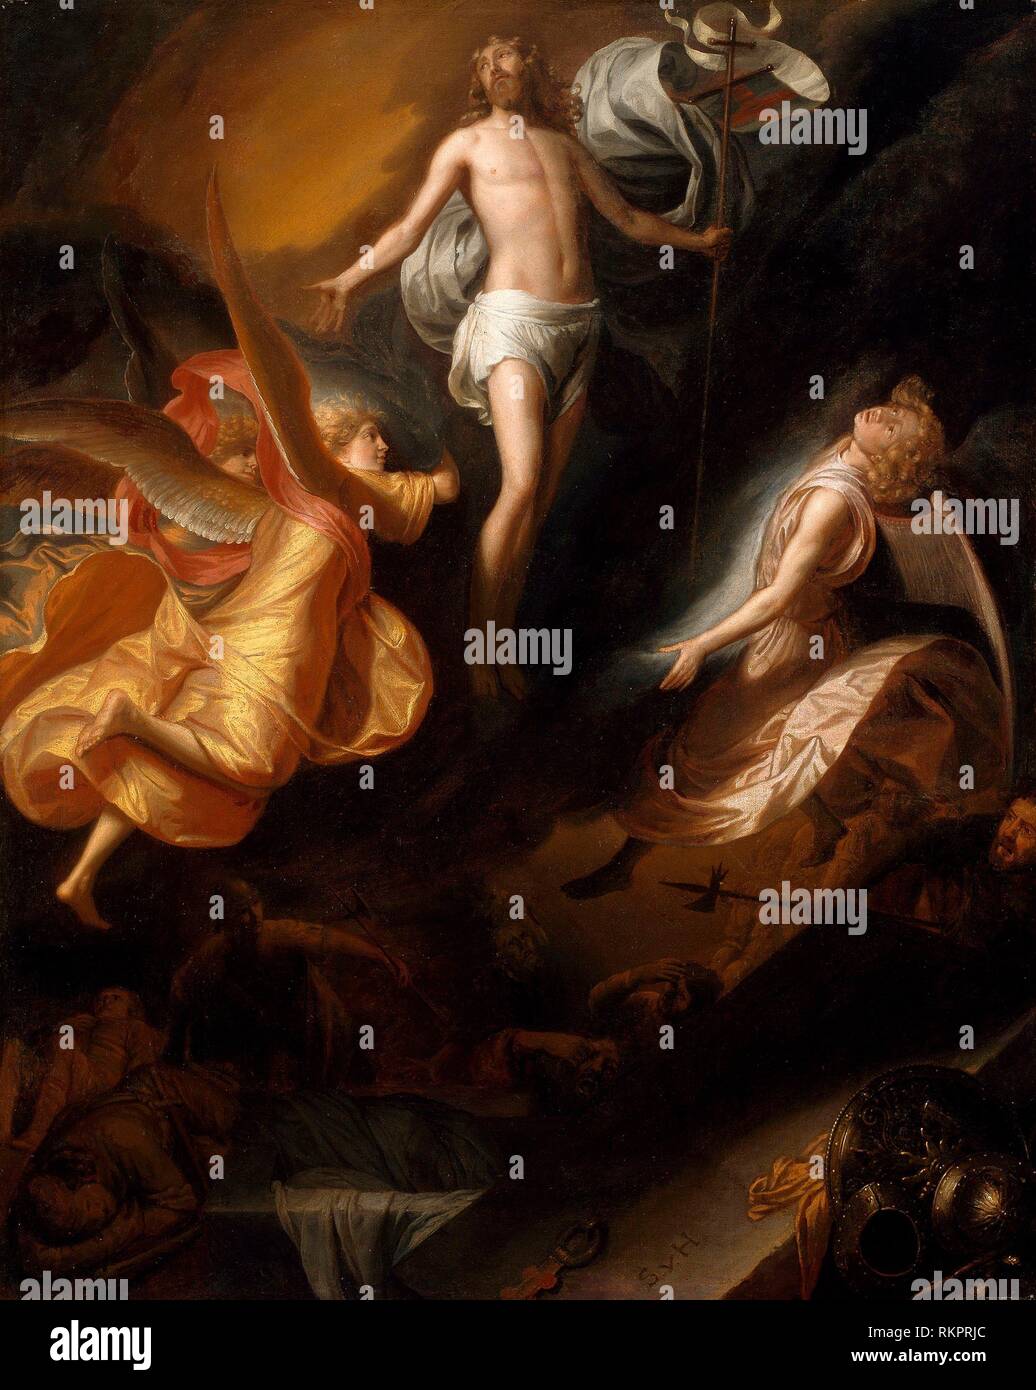 La resurrección de Cristo - 1665/70 - Samuel van Hoogstraten holandés, 1627-1678 - Artista: Samuel van Hoogstraten, Origen: Holanda, Fecha: 1665 - 1670, Foto de stock